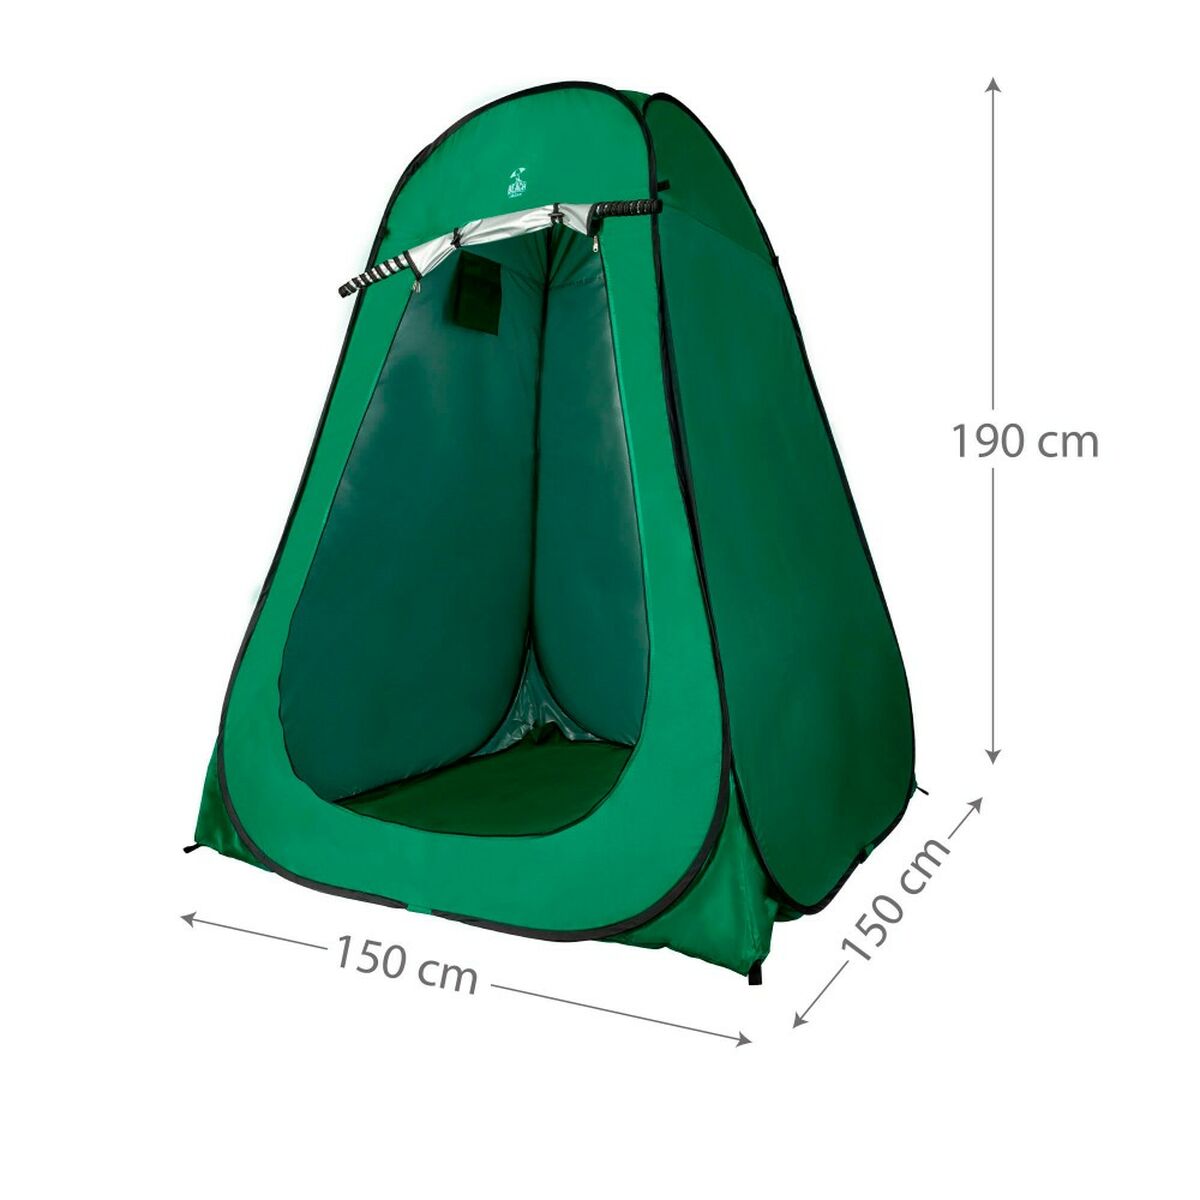 Tent Aktive 150 x 190 x 150 cm (2 Units)